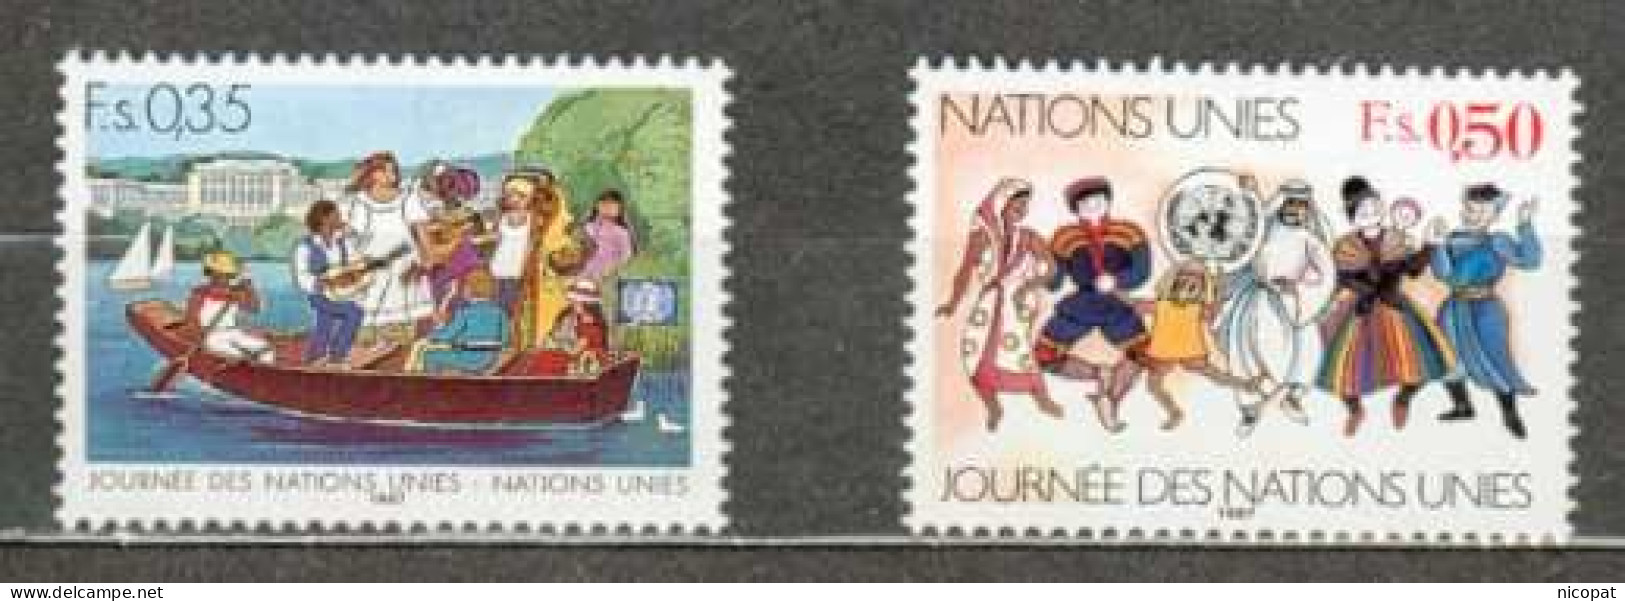 ONU GENEVE MNH ** 158-159 Journée Des Nations Unies Barque Sur Un Lac Costumes Nationaux Folklore - Nuevos